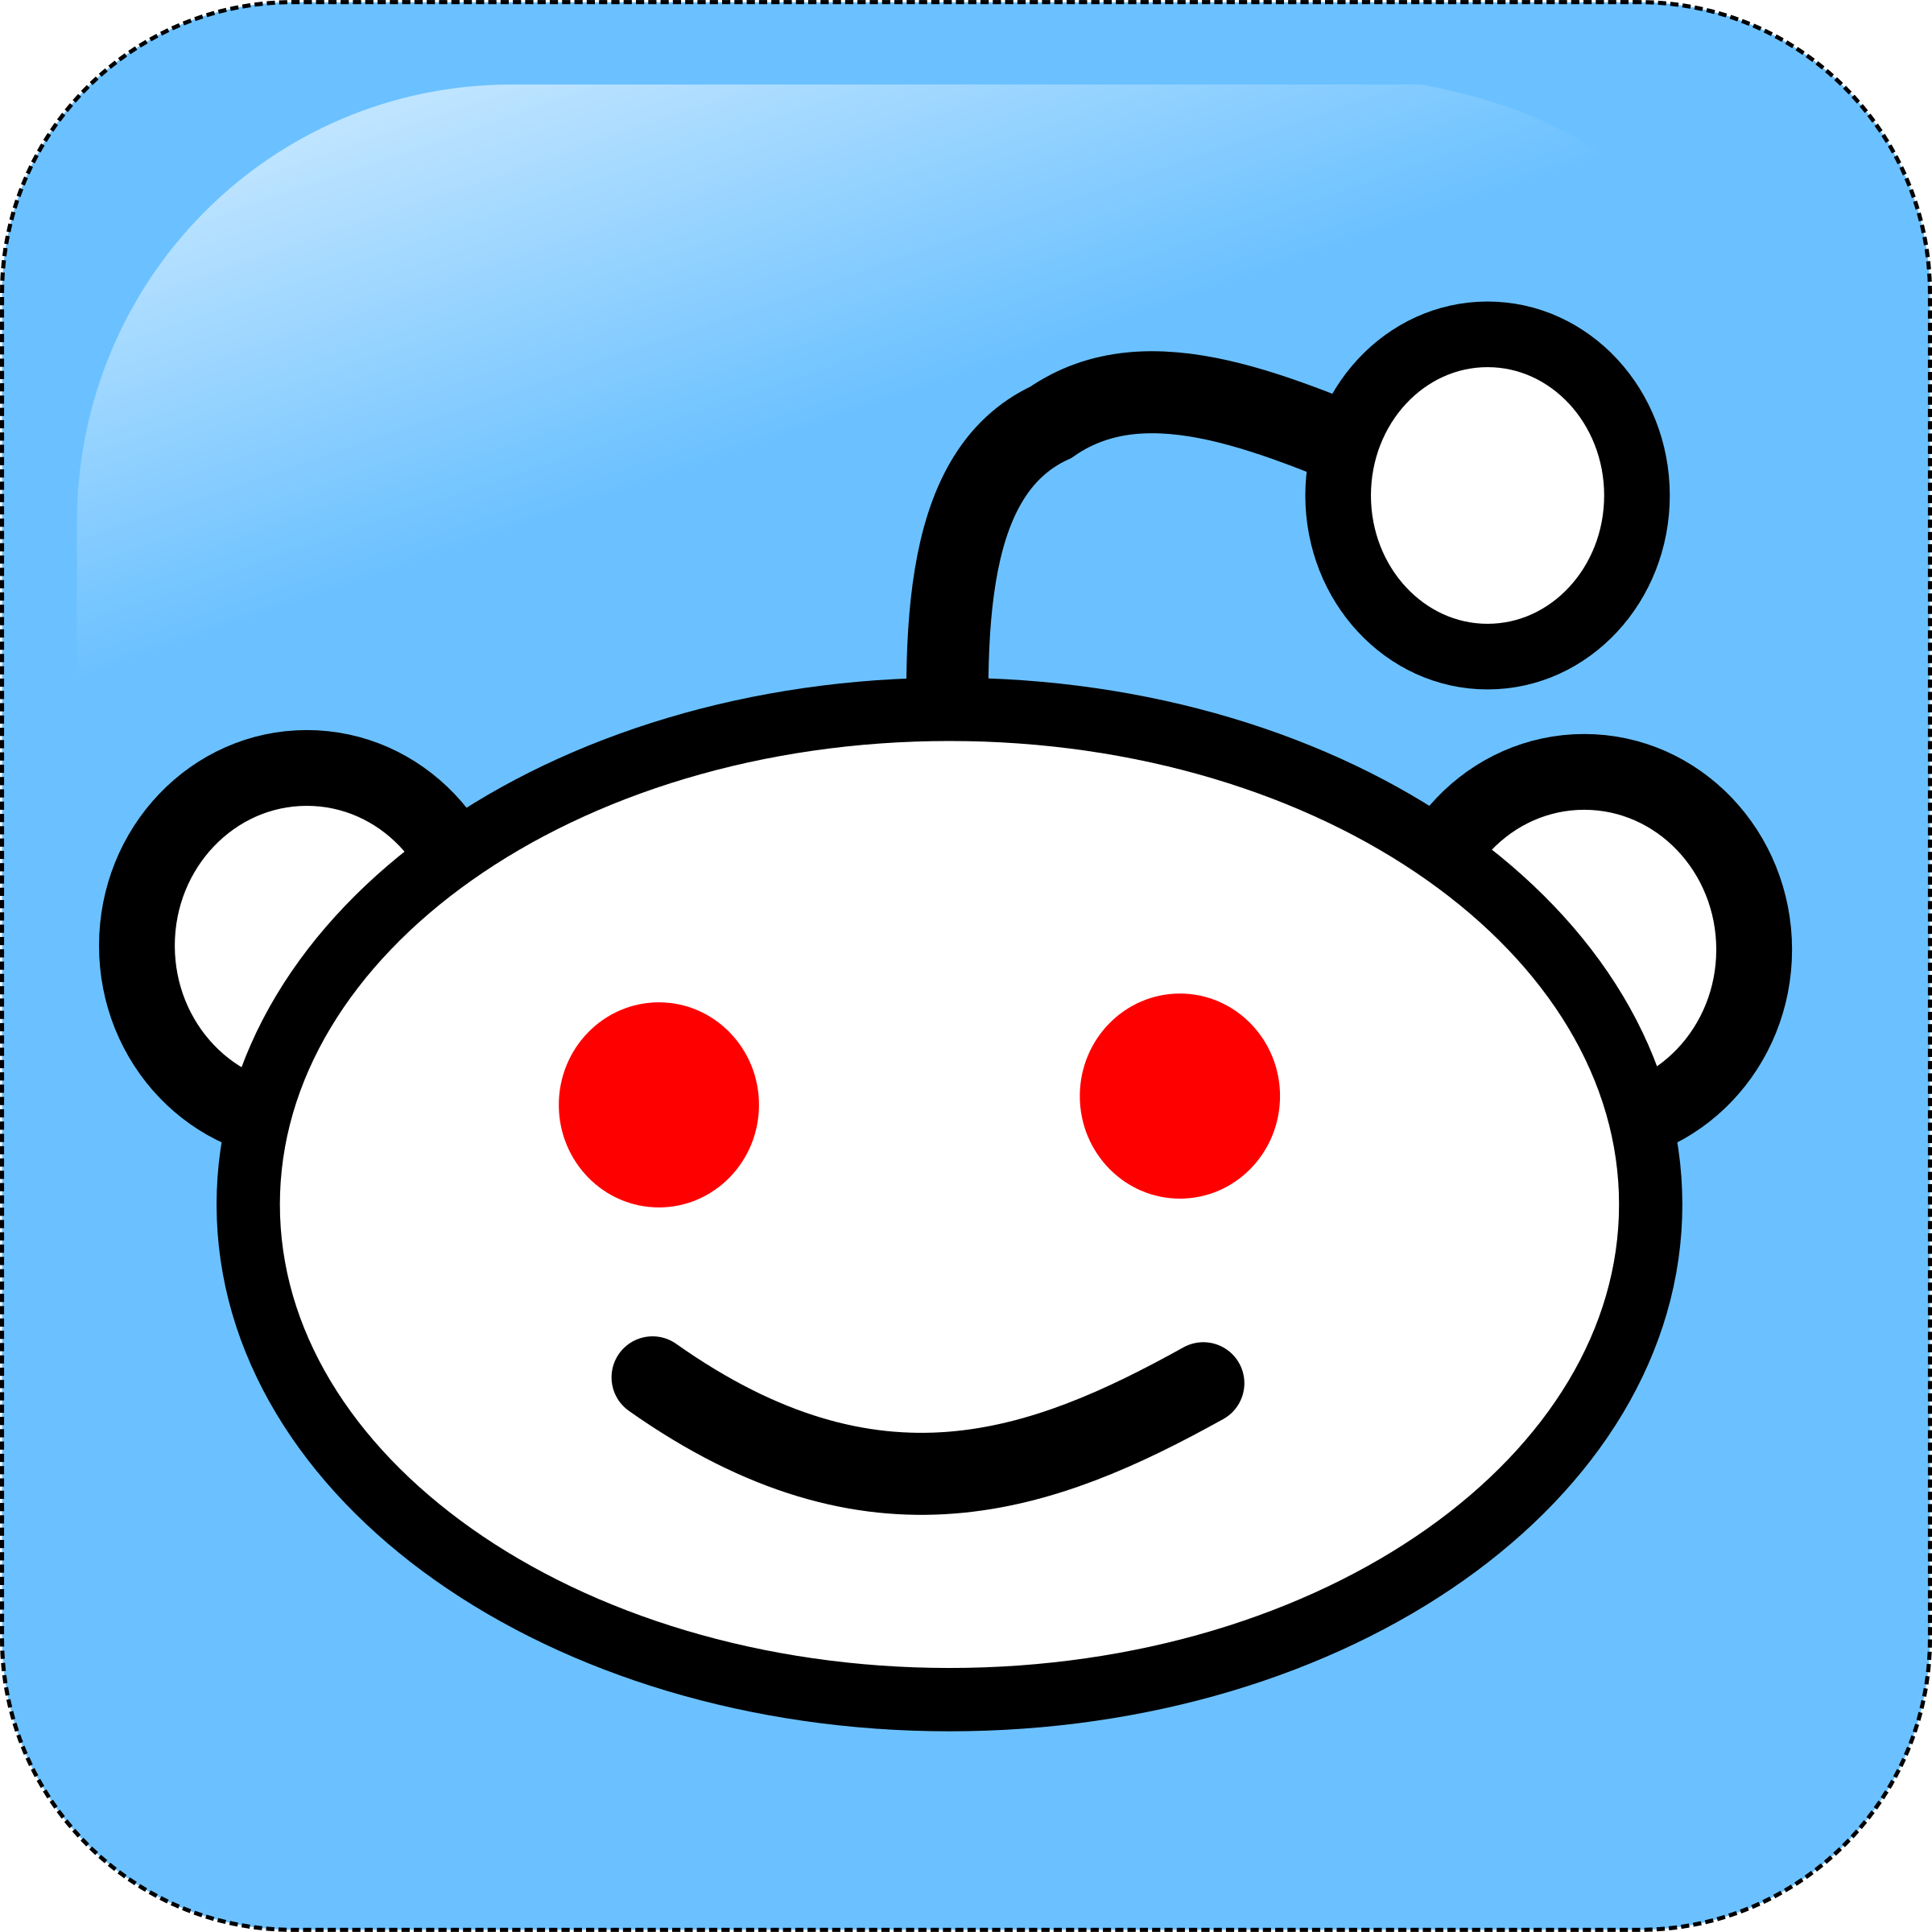 Reddit Logo - Reddit Logo PNG Transparent & SVG Vector